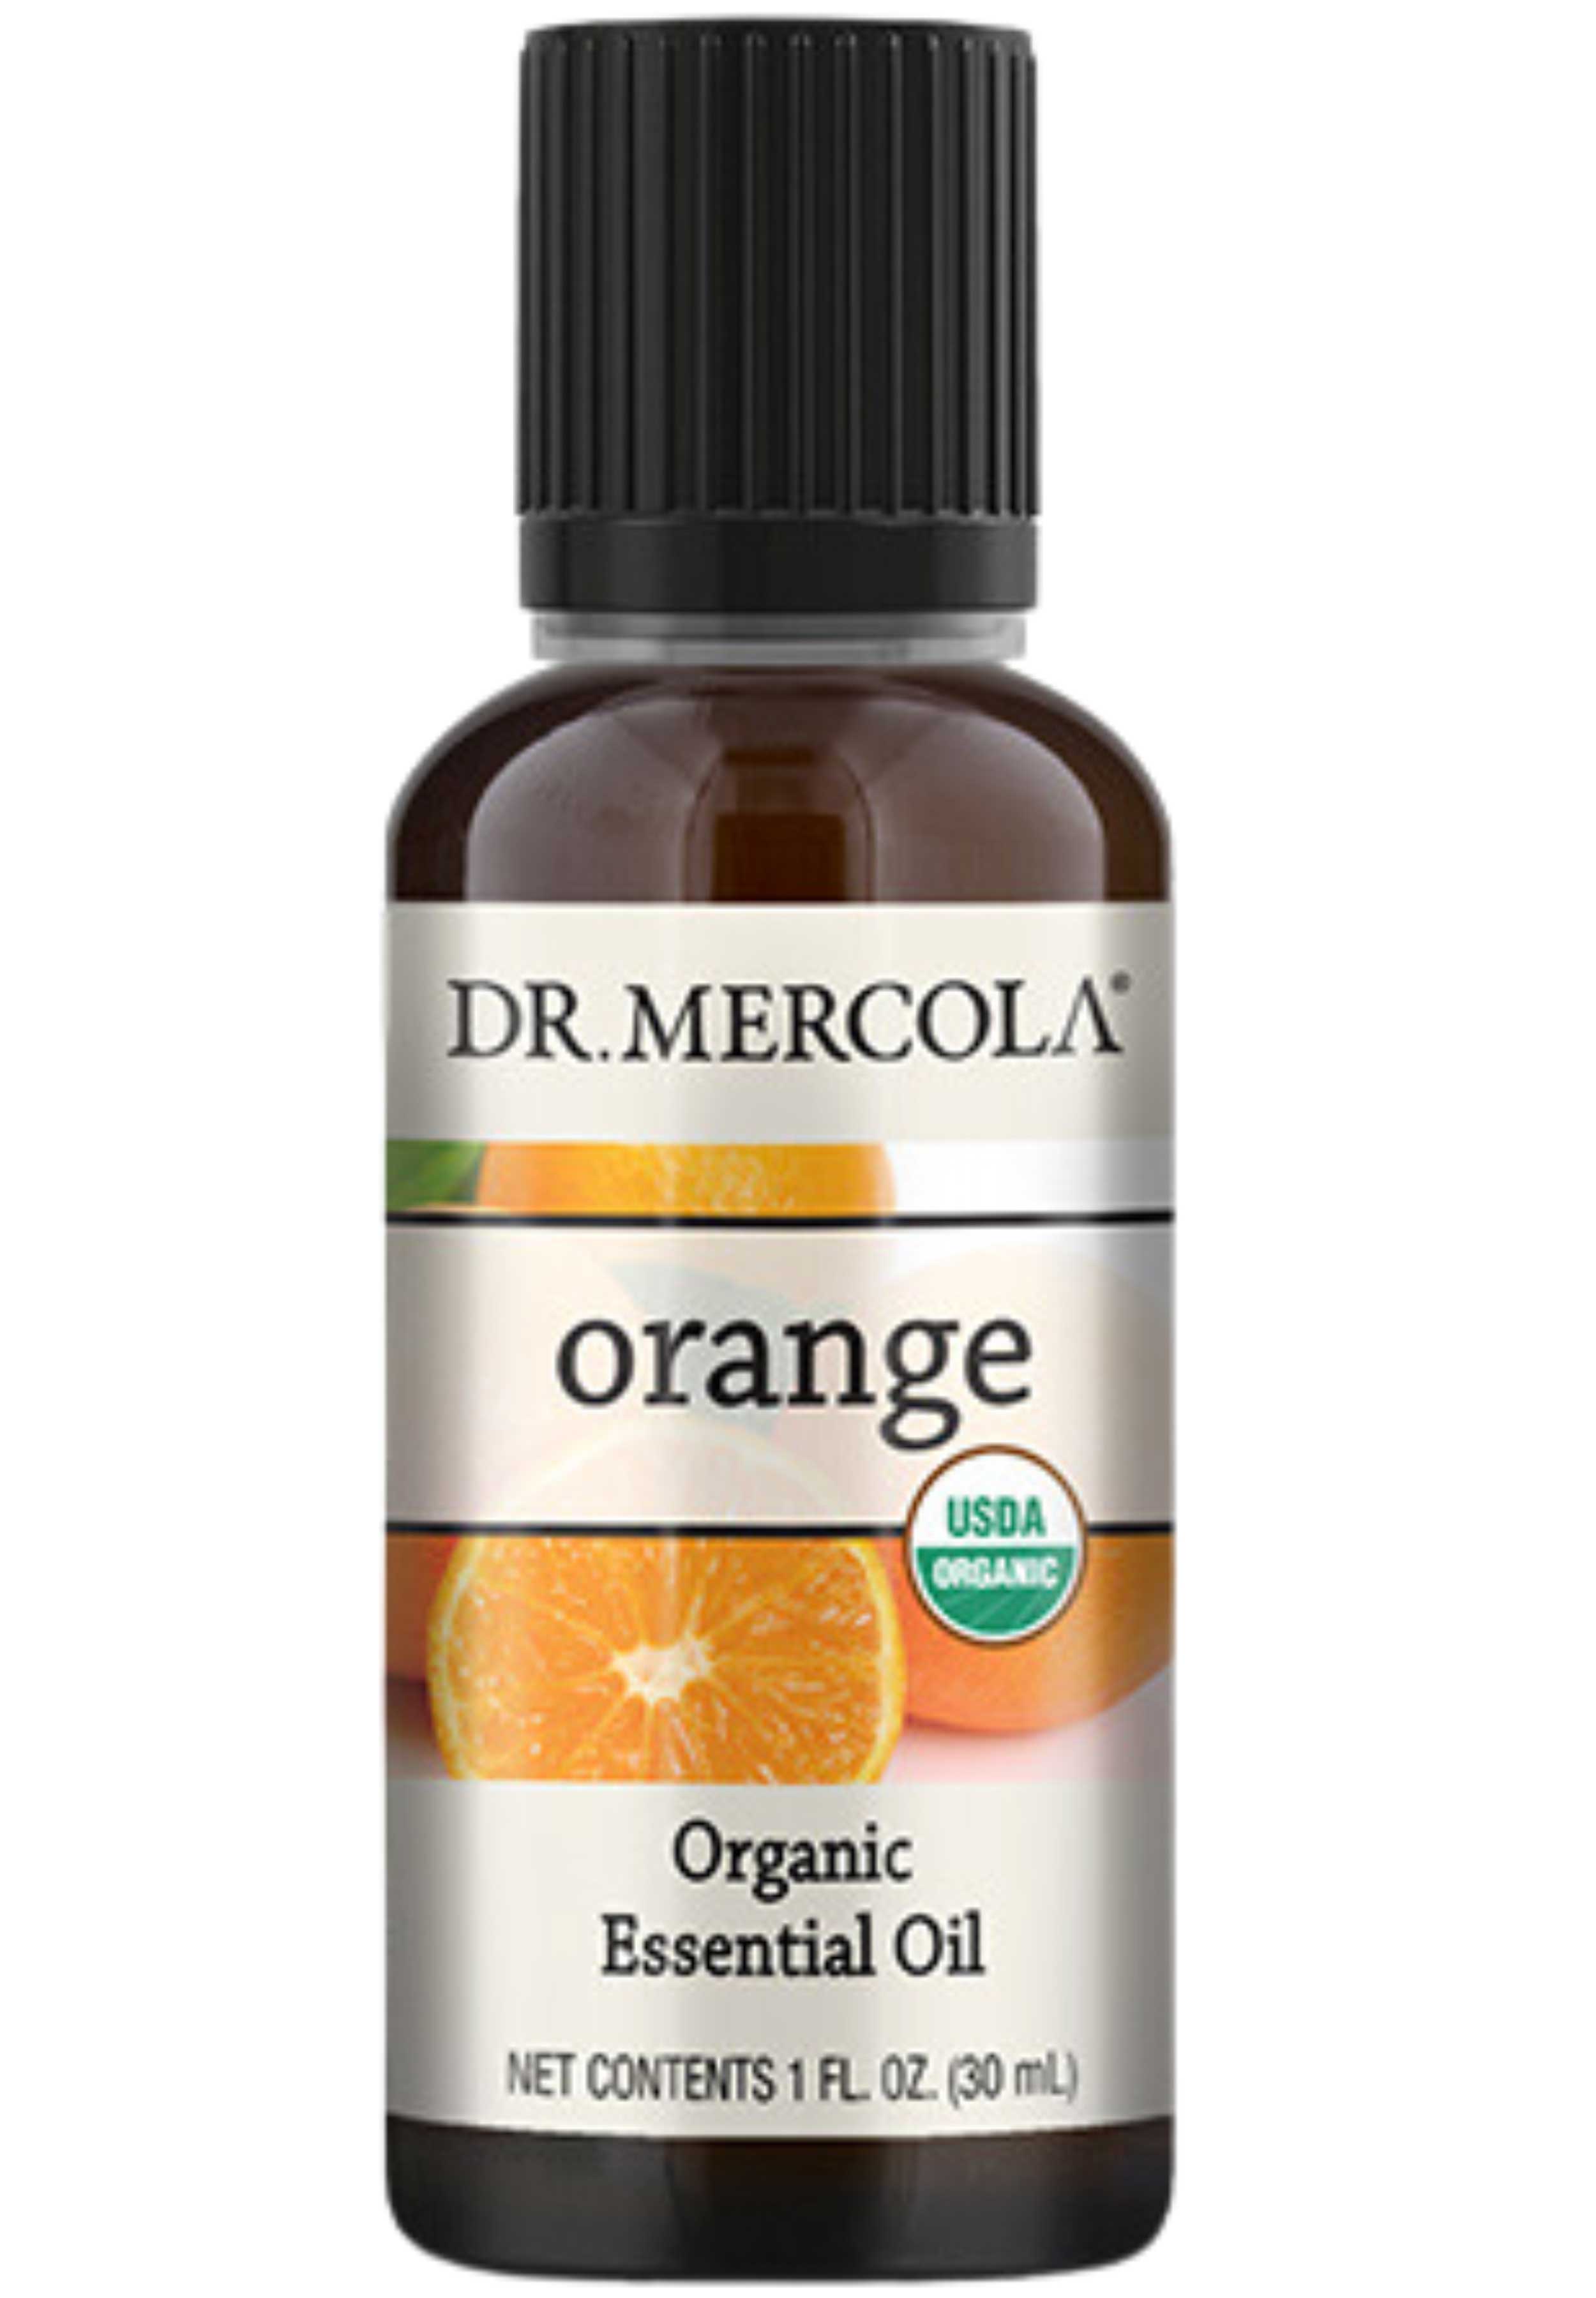 Dr. Mercola Organic Orange Essential Oil